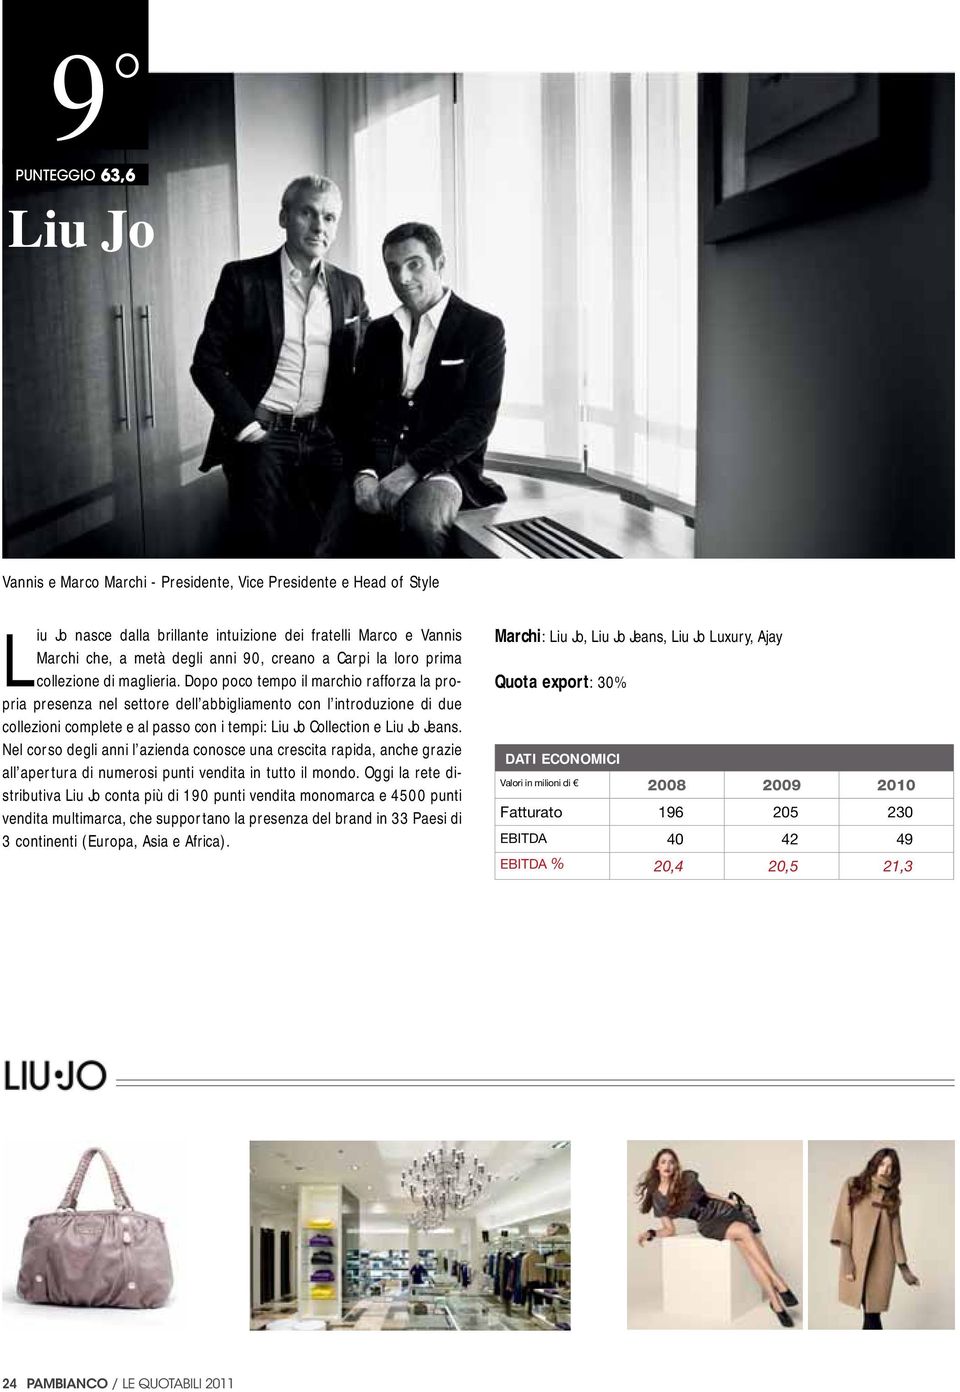 Dopo poco tempo il marchio rafforza la propria presenza nel settore dell abbigliamento con l introduzione di due collezioni complete e al passo con i tempi: Liu Jo Collection e Liu Jo Jeans.